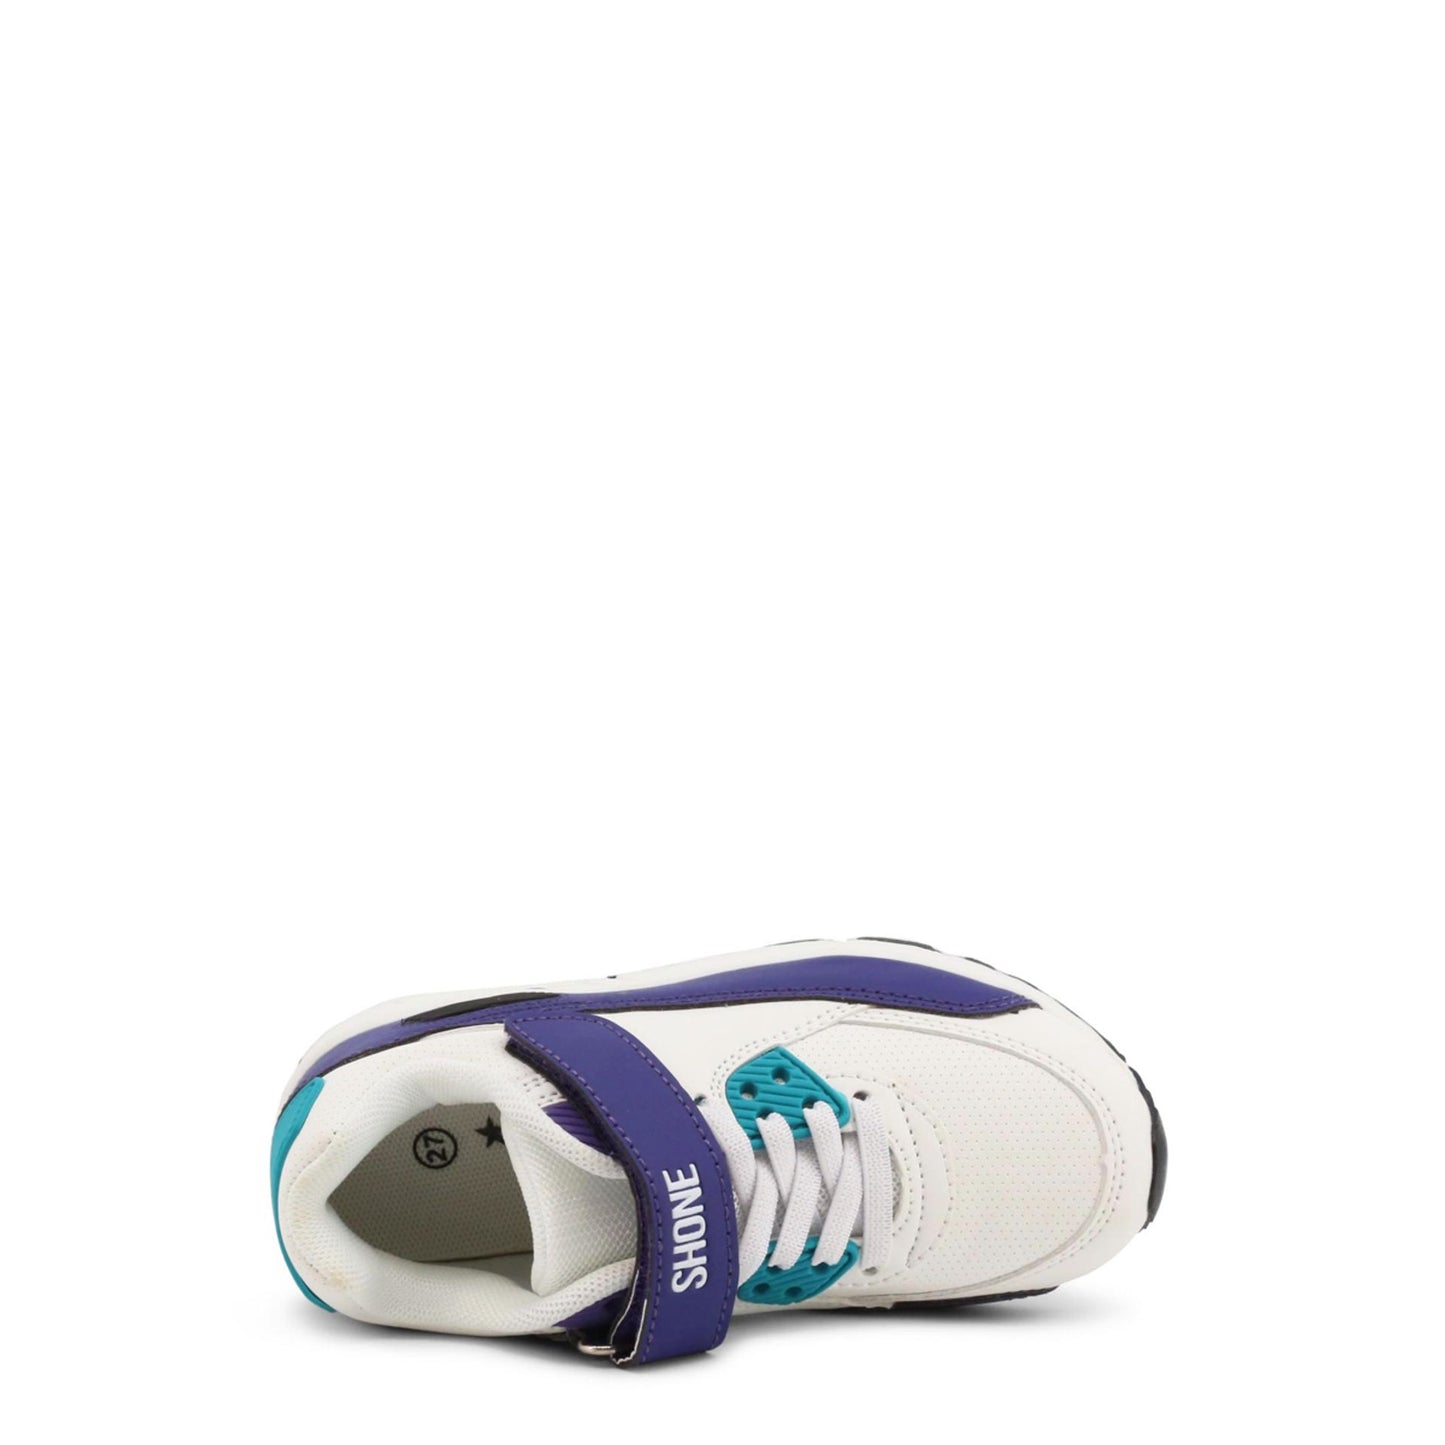 Scarpa sportiva bambina bianco viola con strappo, punta tonda e inserto nella suola